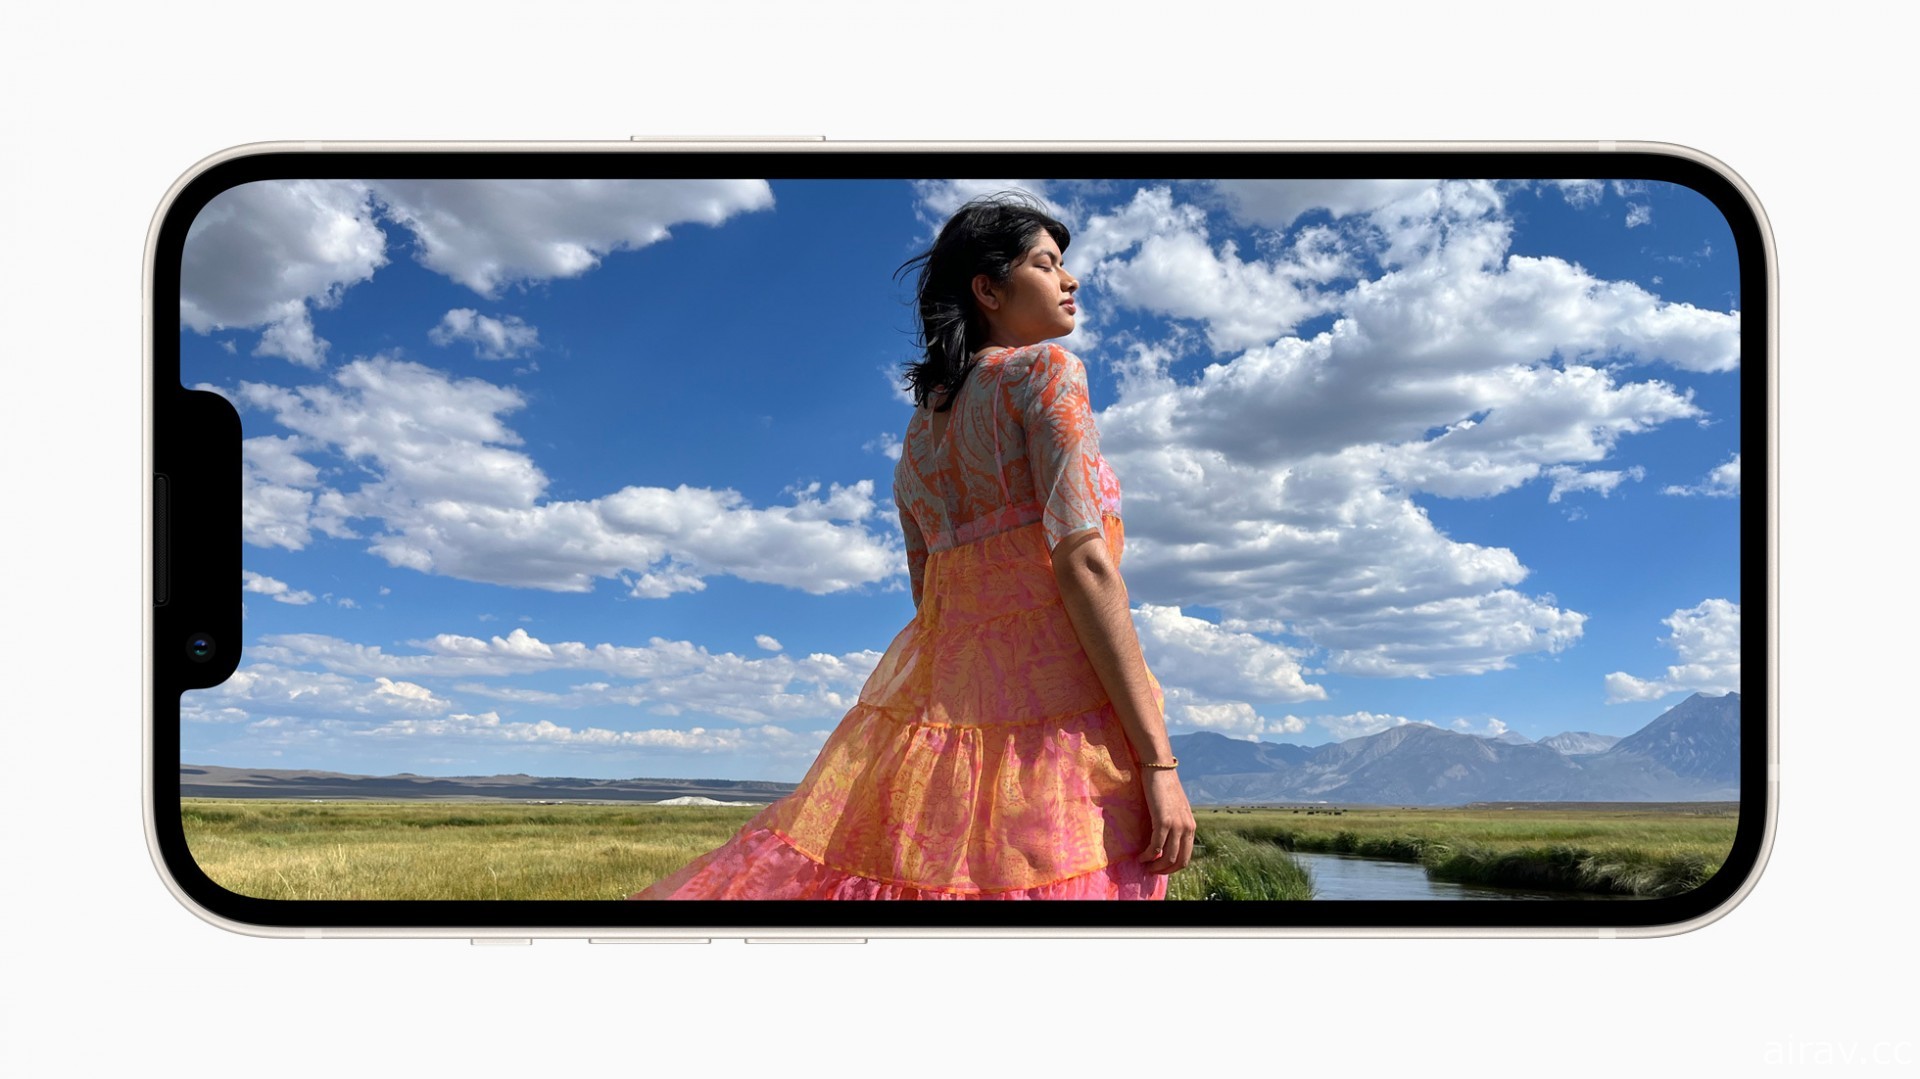 Apple 發表 iPhone 13 與 iPhone 13 mini 強調相機創新功能及優秀續航力